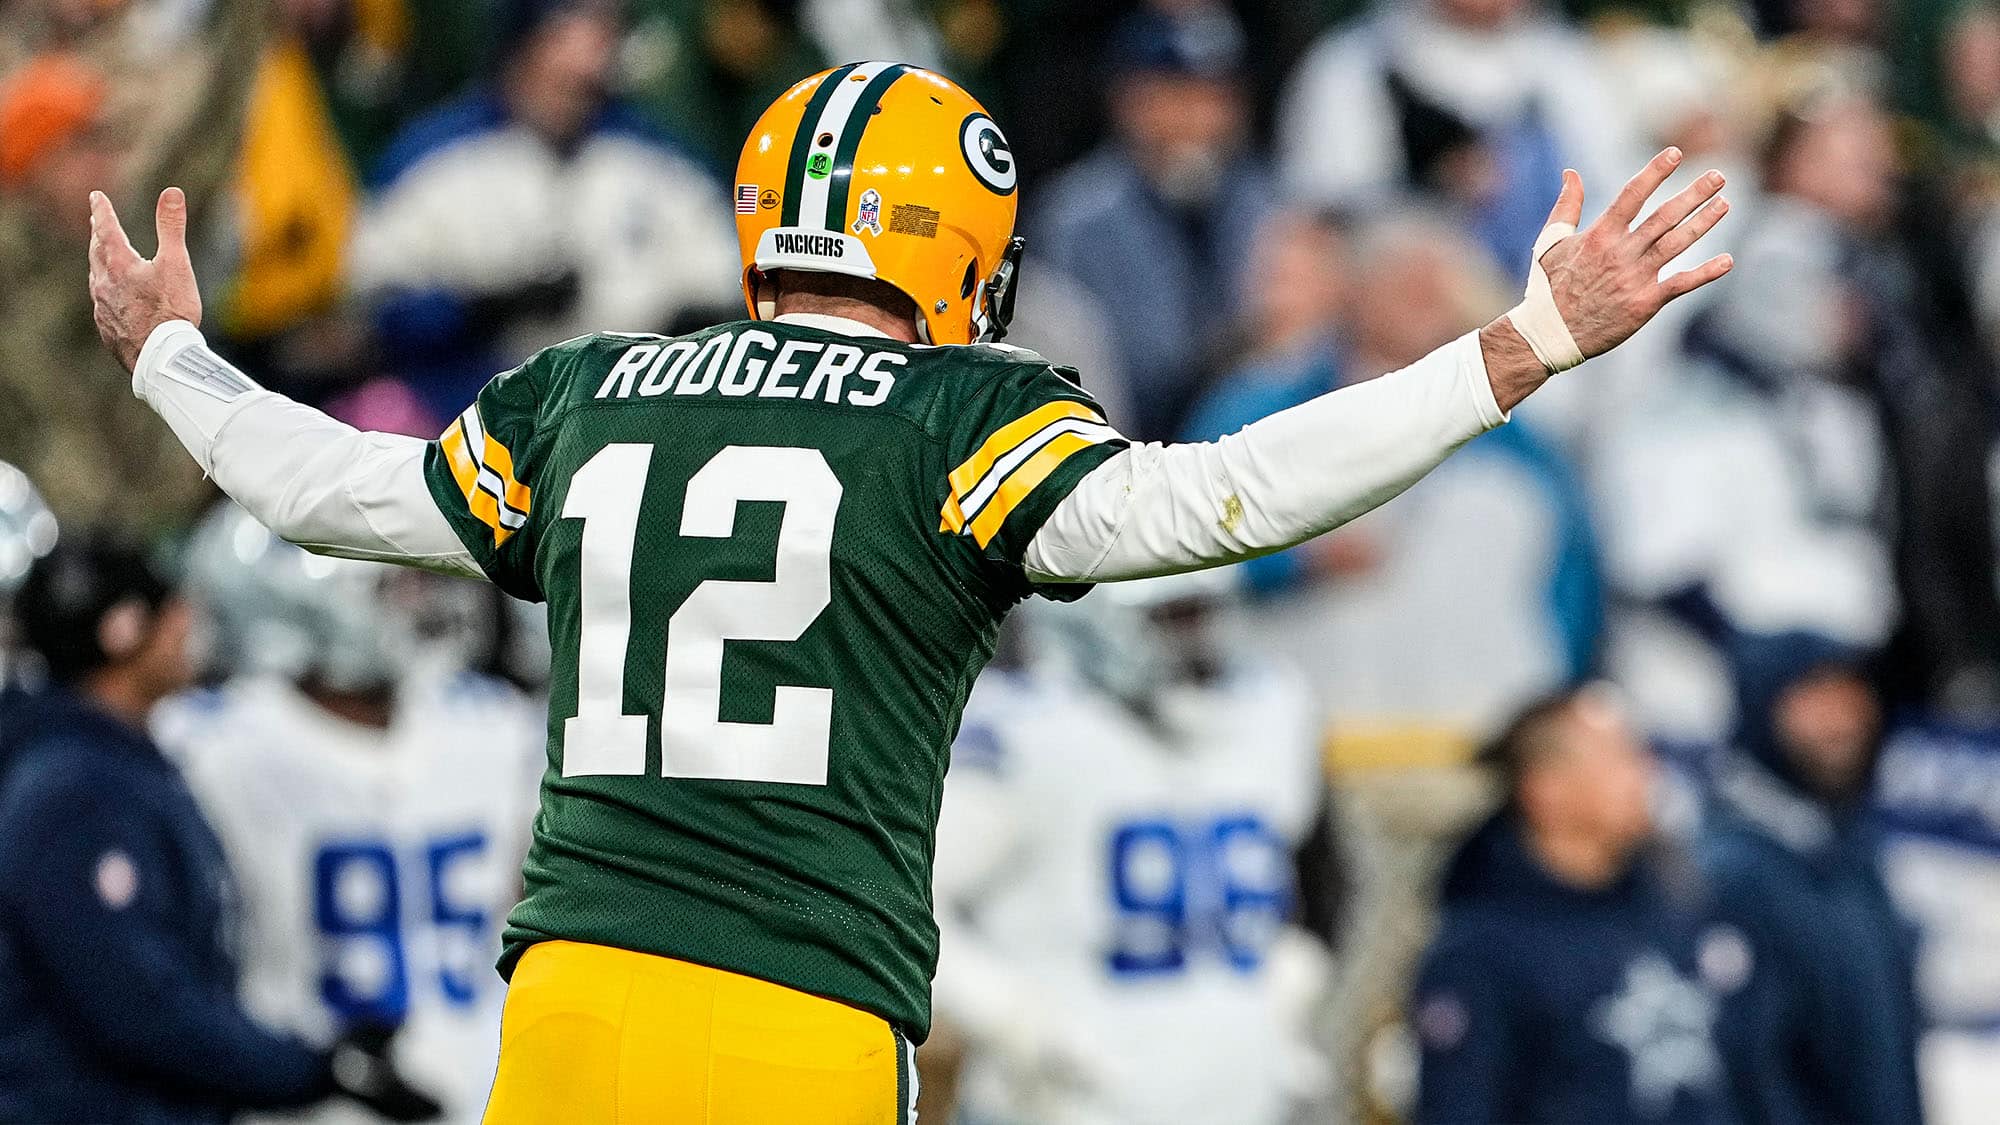 NFL Week 12 best bets: Rams vs. Packers has intriguing odds - Los